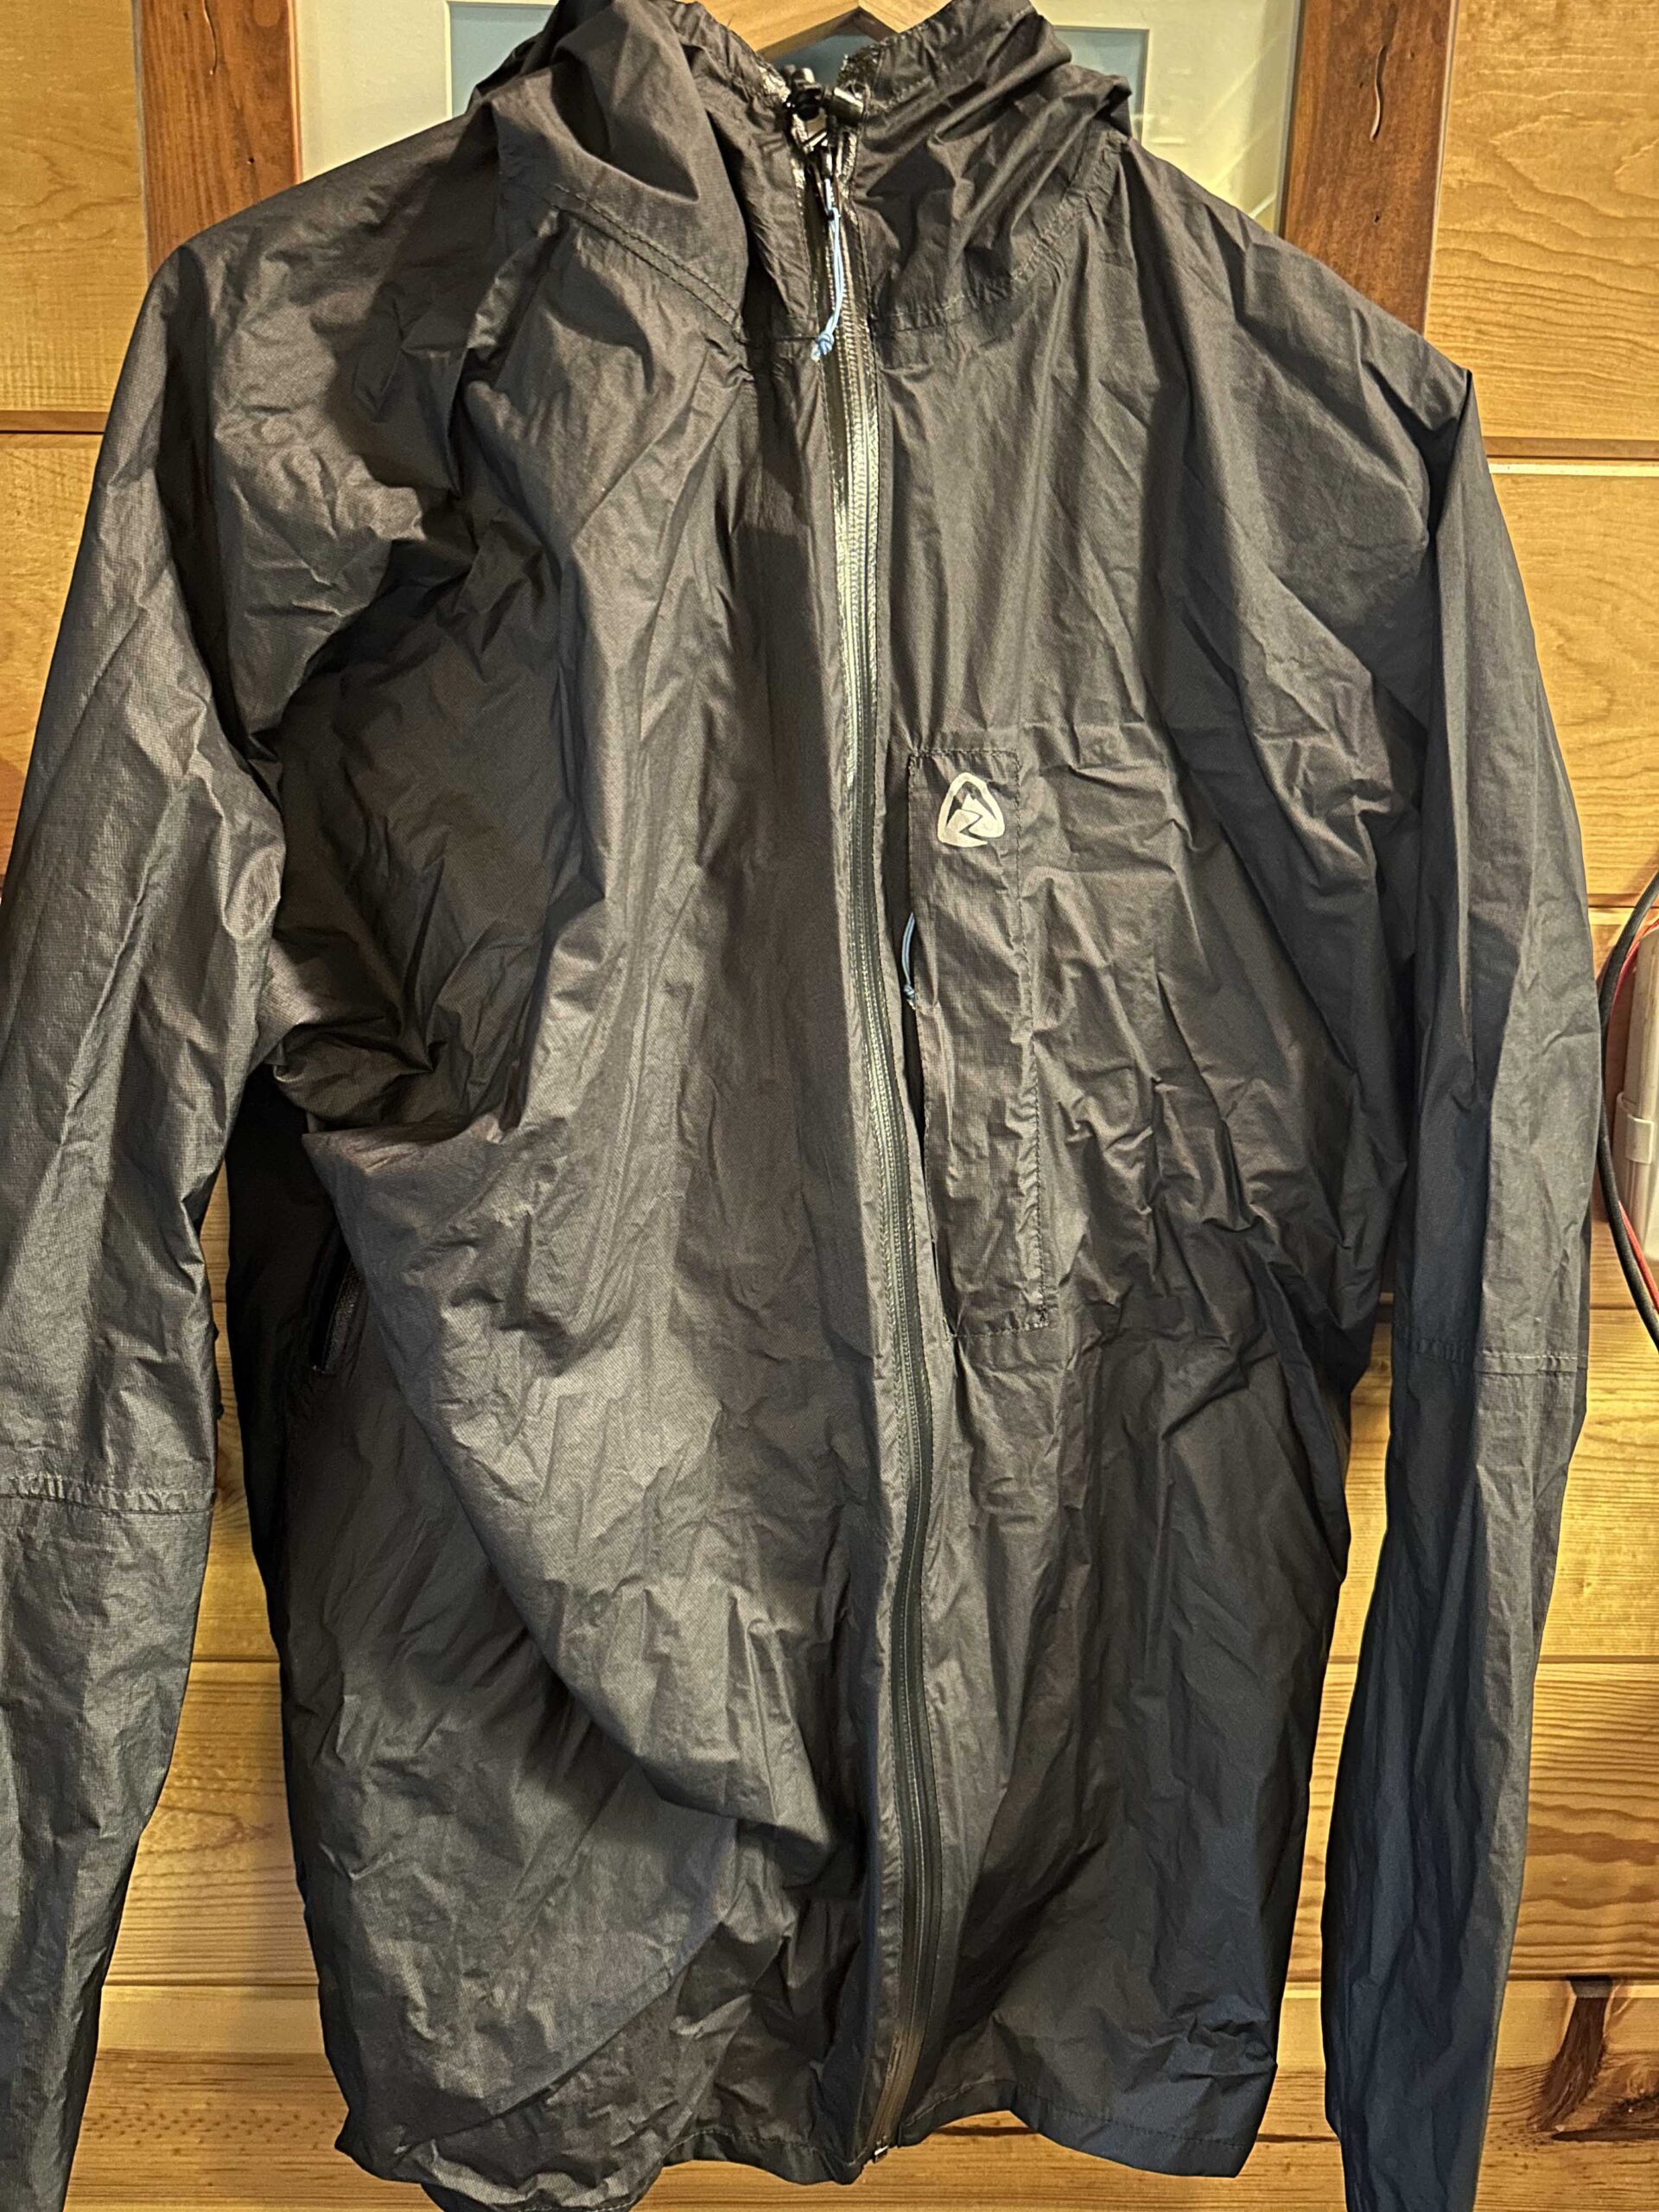 SOLD - ZPacks Men's Vertice Rain Jacket - Backpacking Light